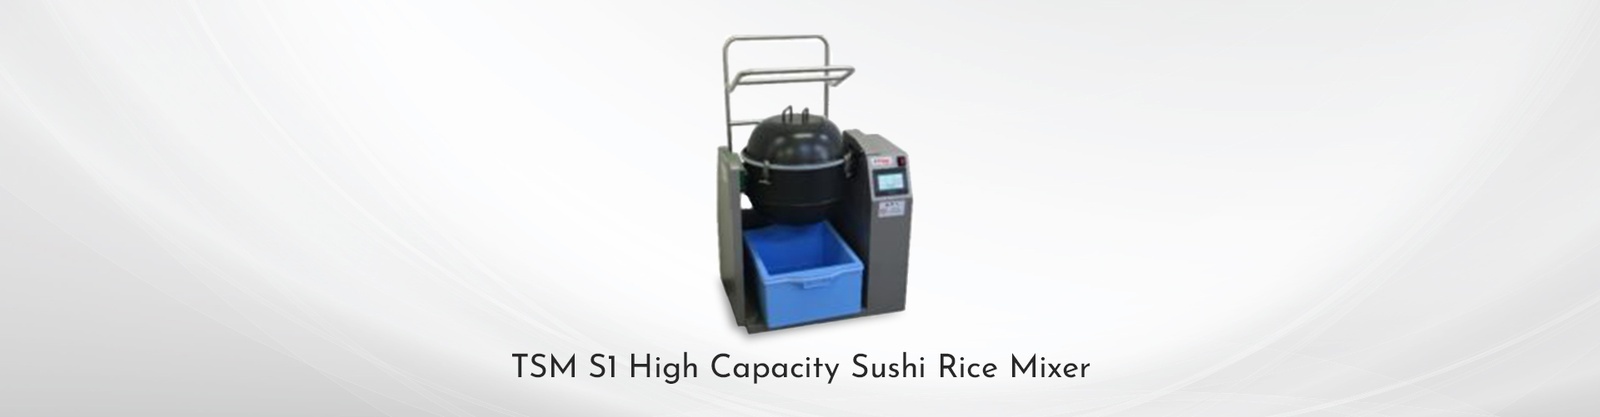 TSM S1 High Capacity Sushi Rice Mixer